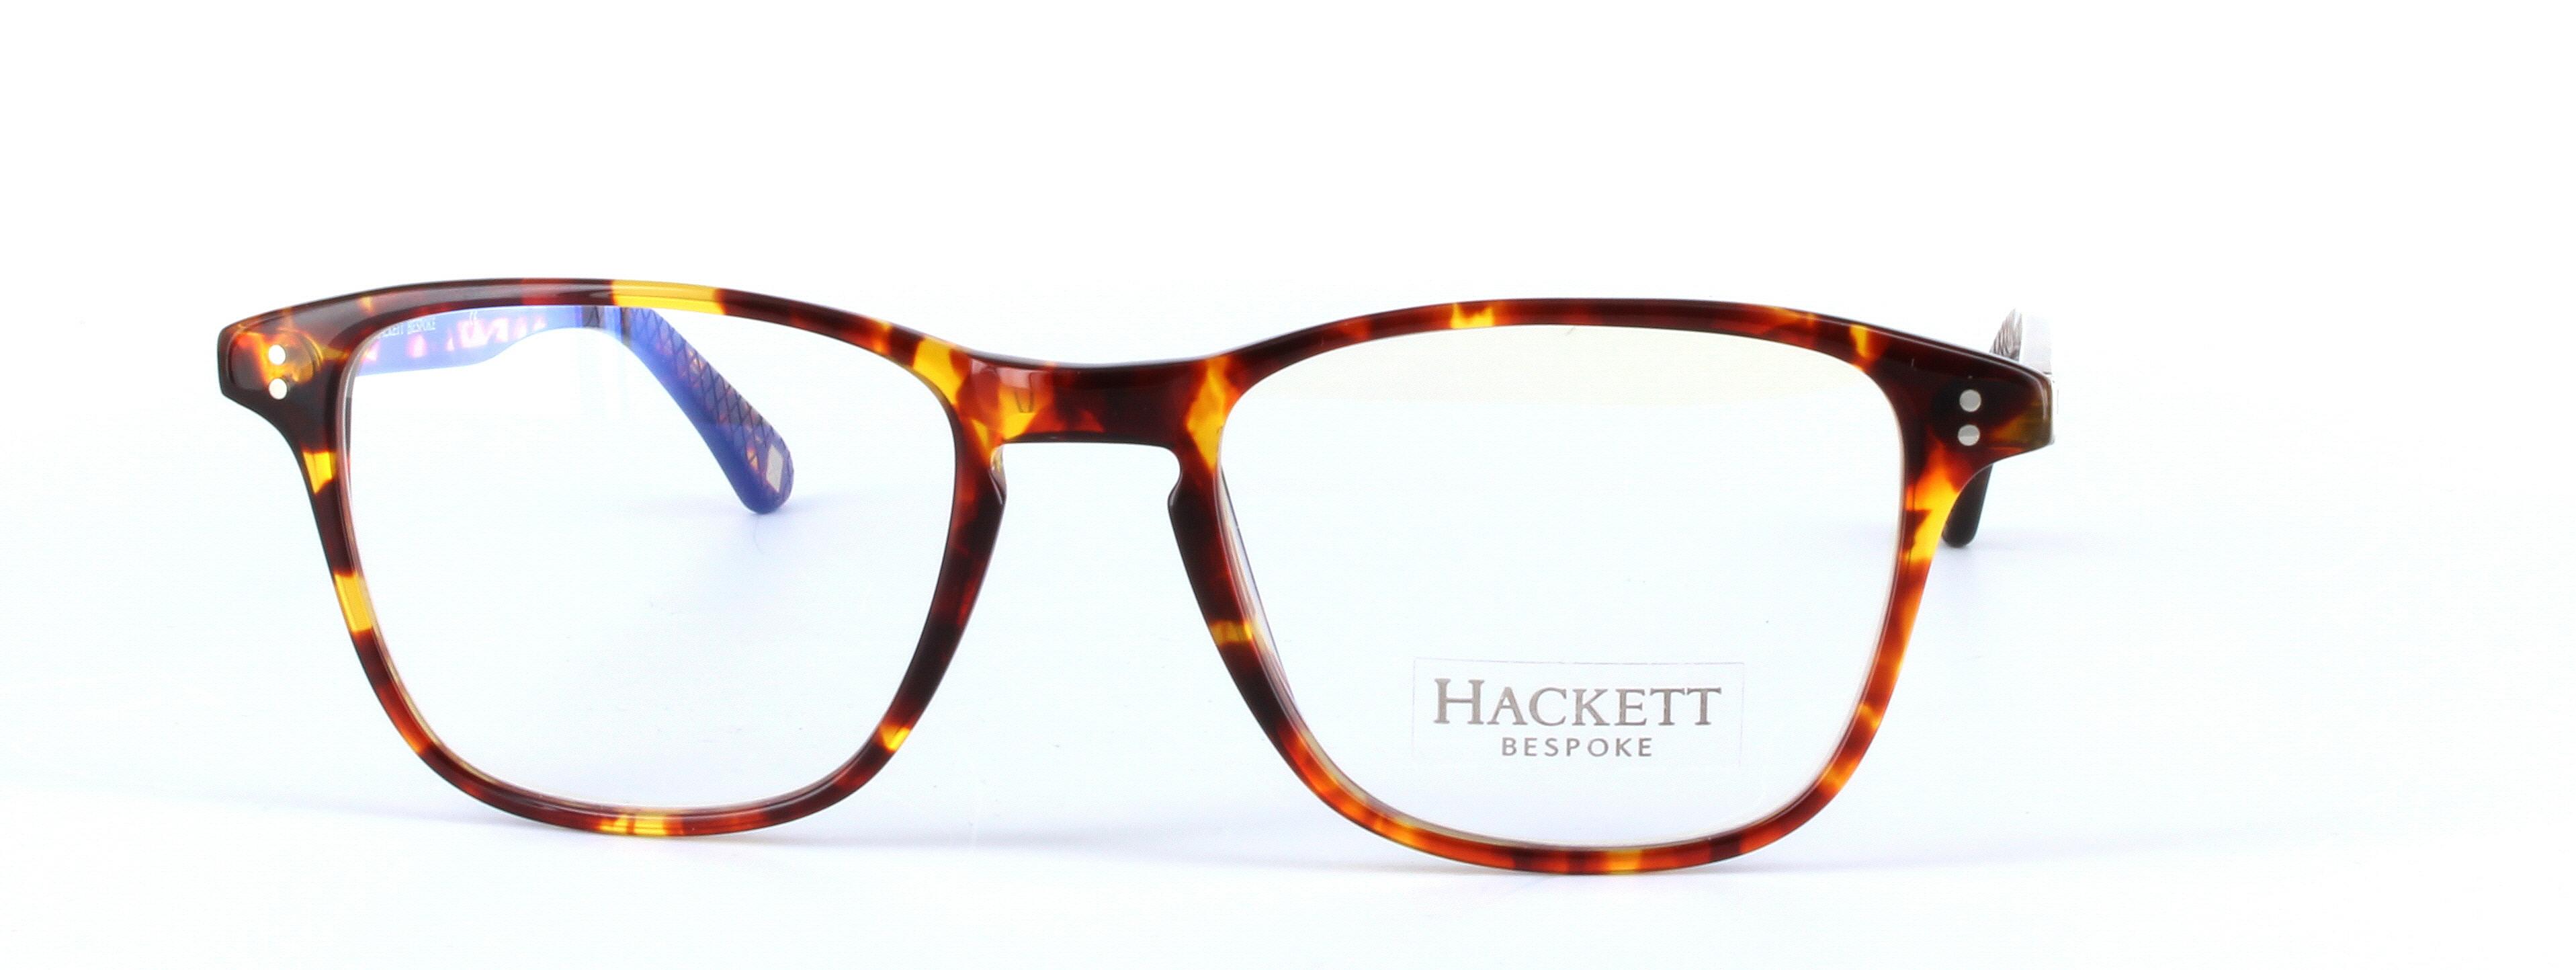 Hackett Bespoke Brille HEB140 127 51